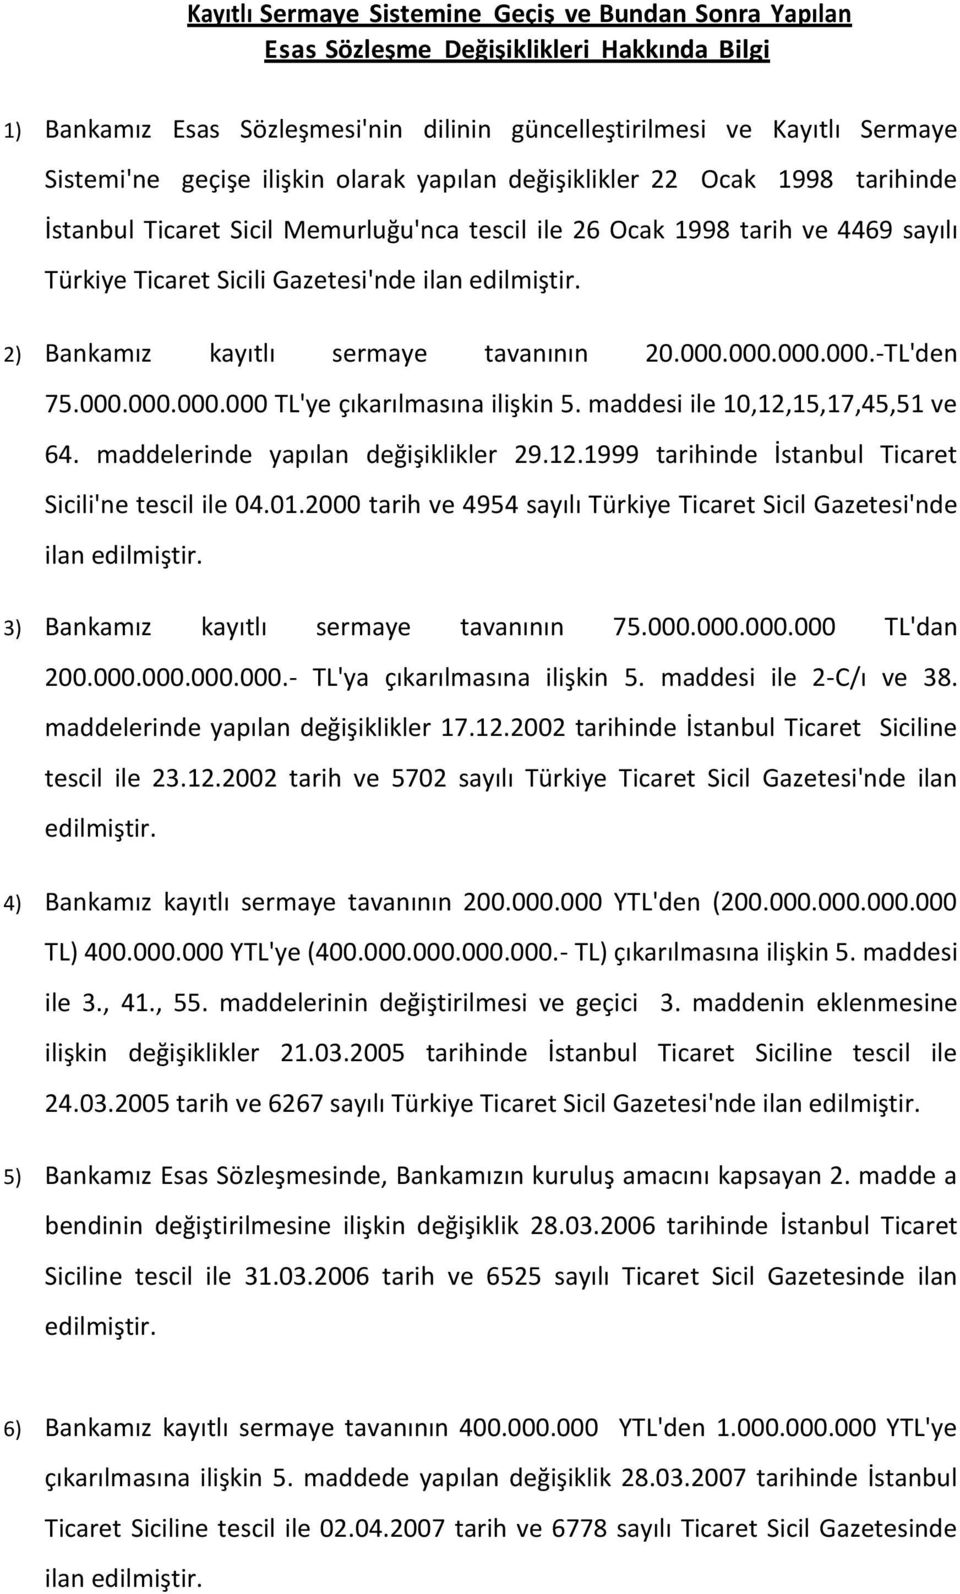 2) Bankamız kayıtlı sermaye tavanının 20.000.000.000.000.-TL'den 75.000.000.000.000 TL'ye çıkarılmasına ilişkin 5. maddesi ile 10,12,15,17,45,51 ve 64. maddelerinde yapılan değişiklikler 29.12.1999 tarihinde İstanbul Ticaret Sicili'ne tescil ile 04.